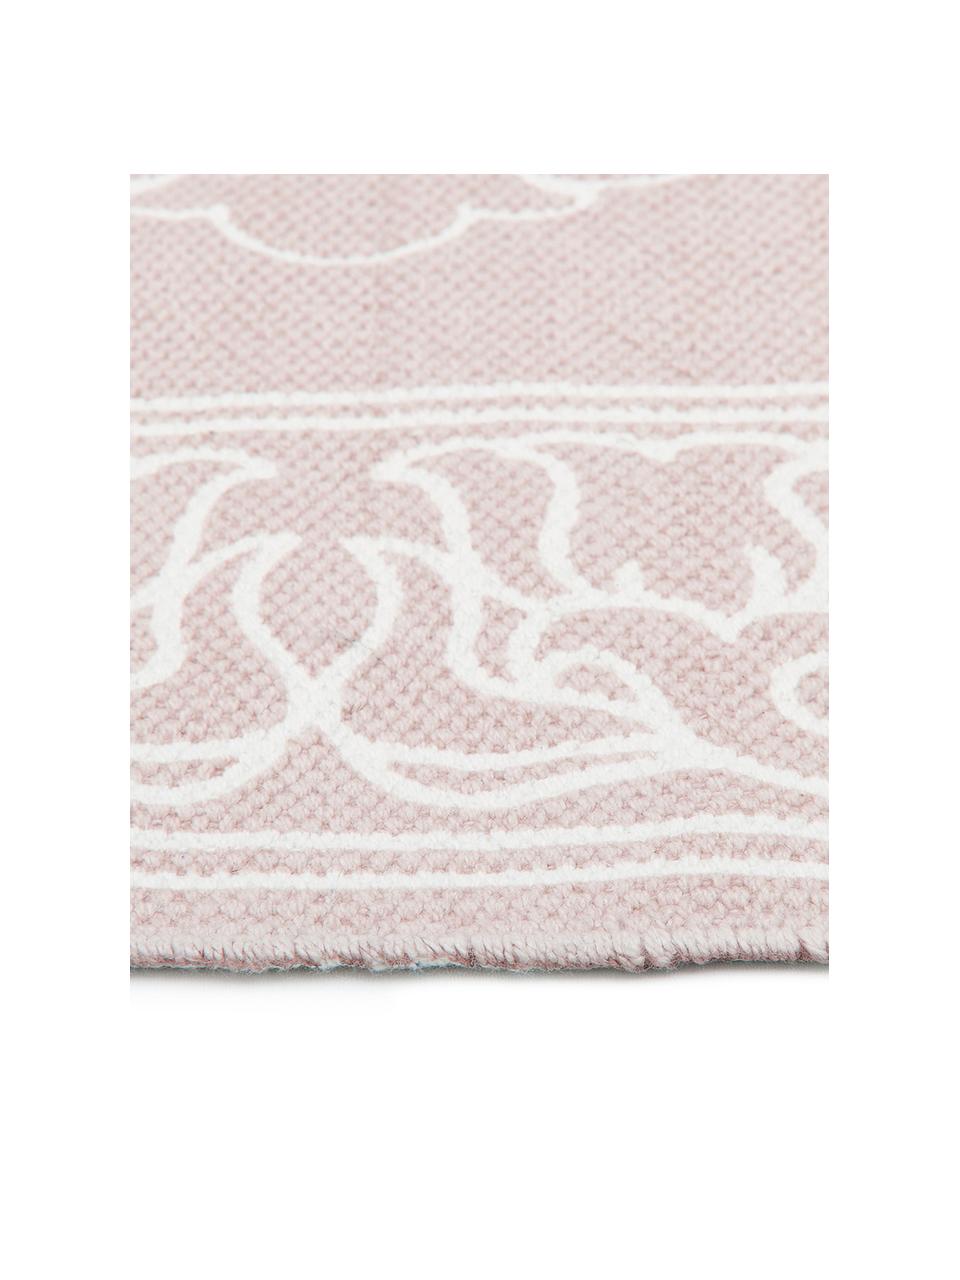 Tappeto in cotone fantasia tessuto a mano con nappe Salima, 100% cotone, Rosa, bianco crema, Larg. 120 x Lung. 180 cm (taglia S)